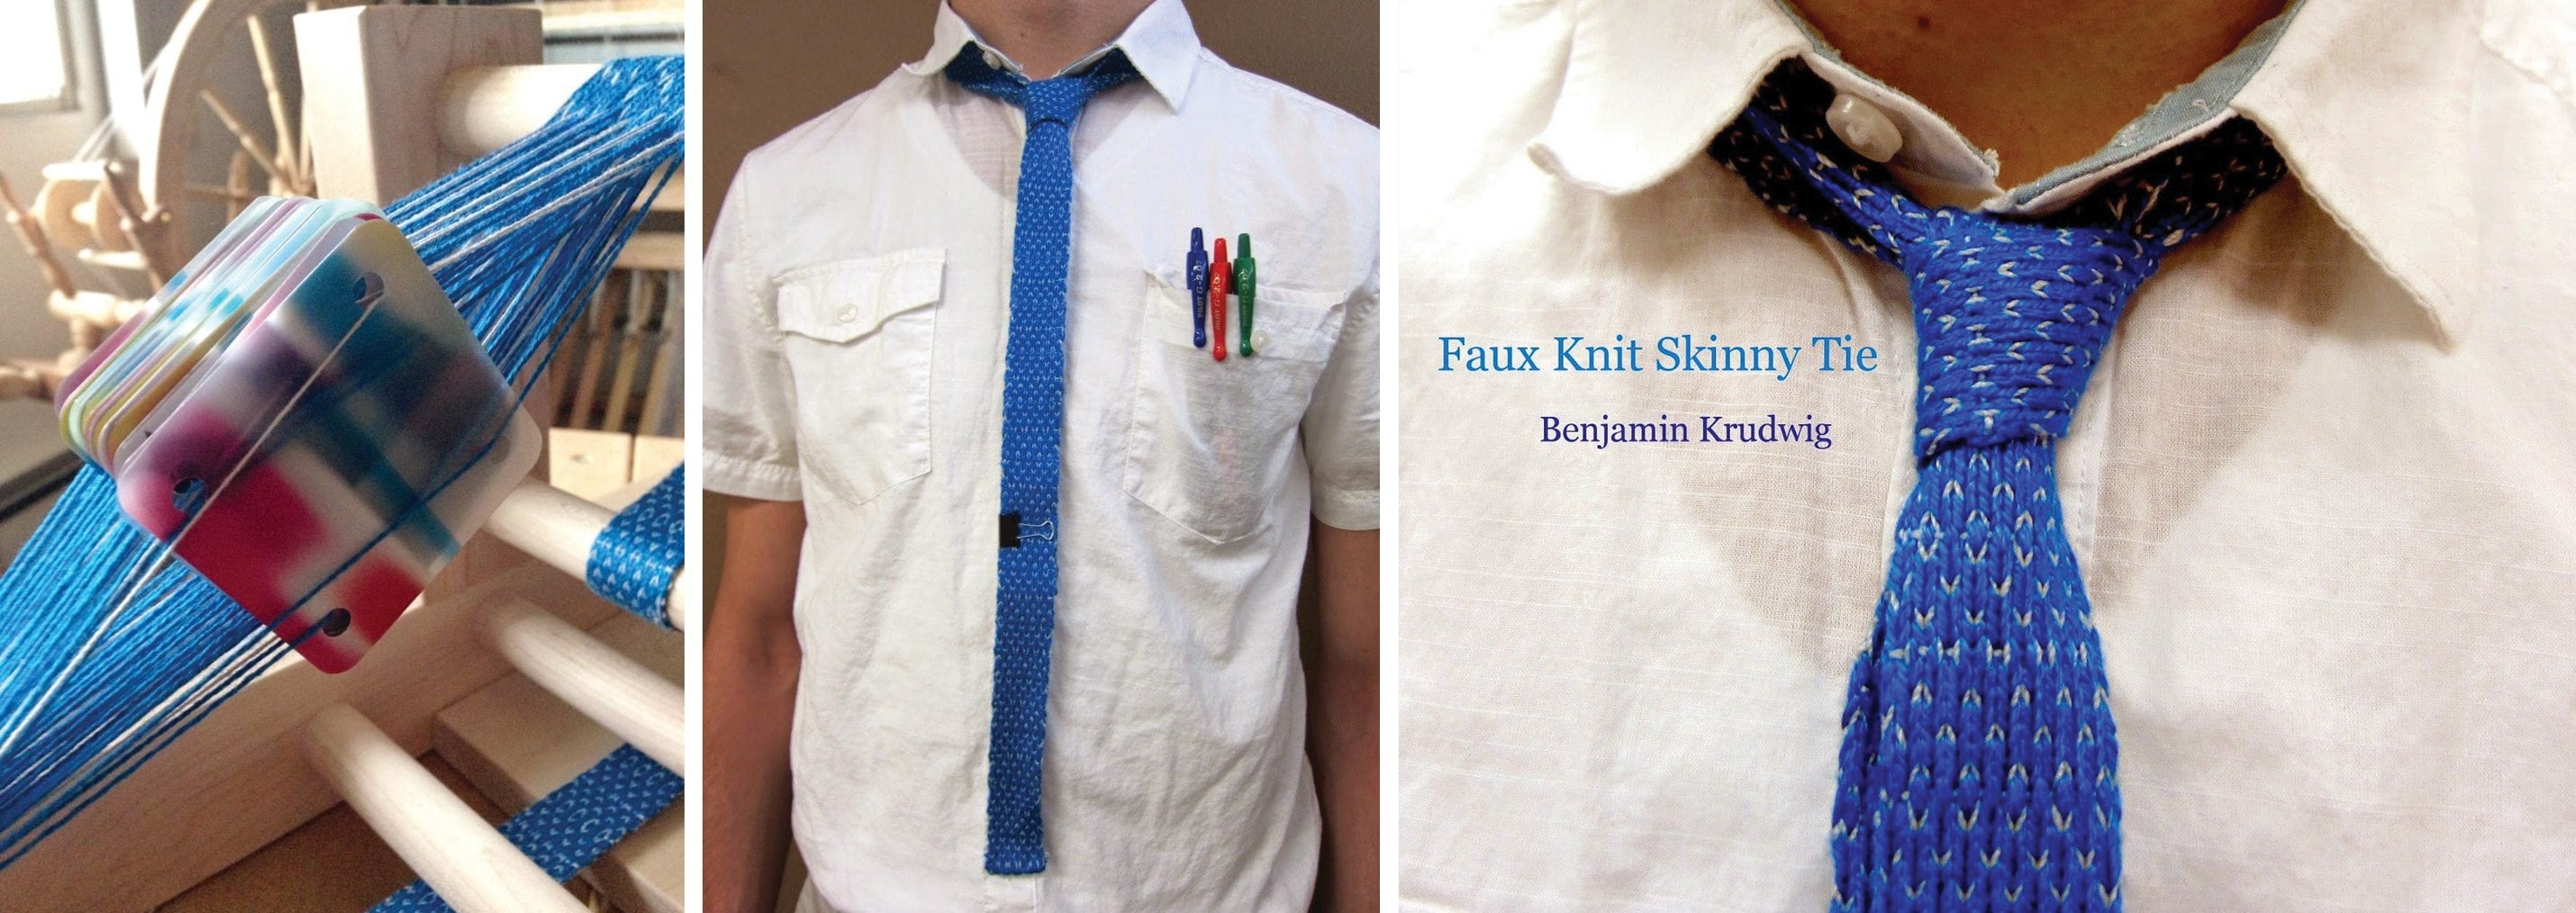 Faux Knit Skinny Tie